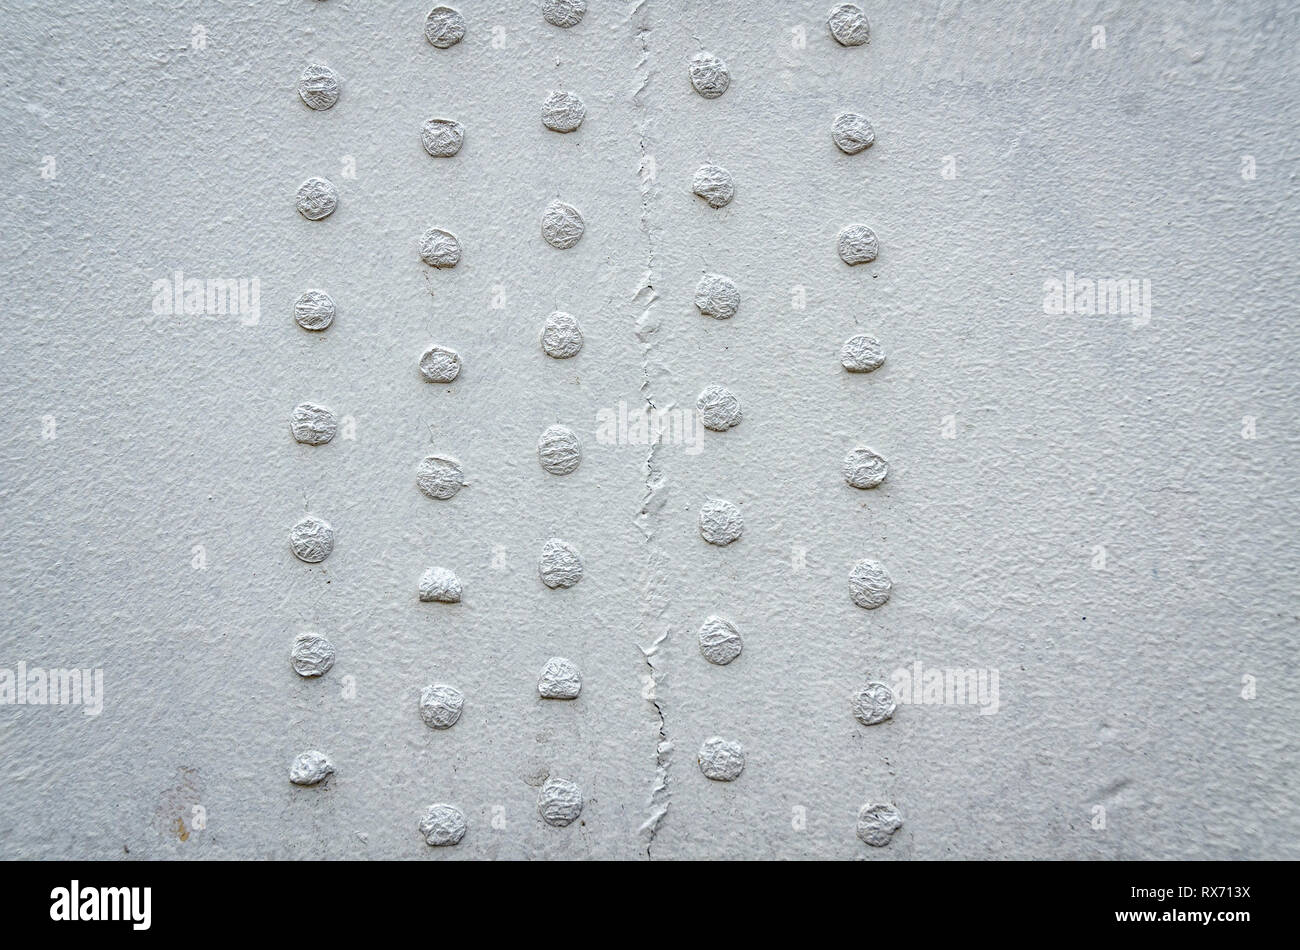 Un gros plan d'un mur gris sale avec des petits cercles. Banque D'Images